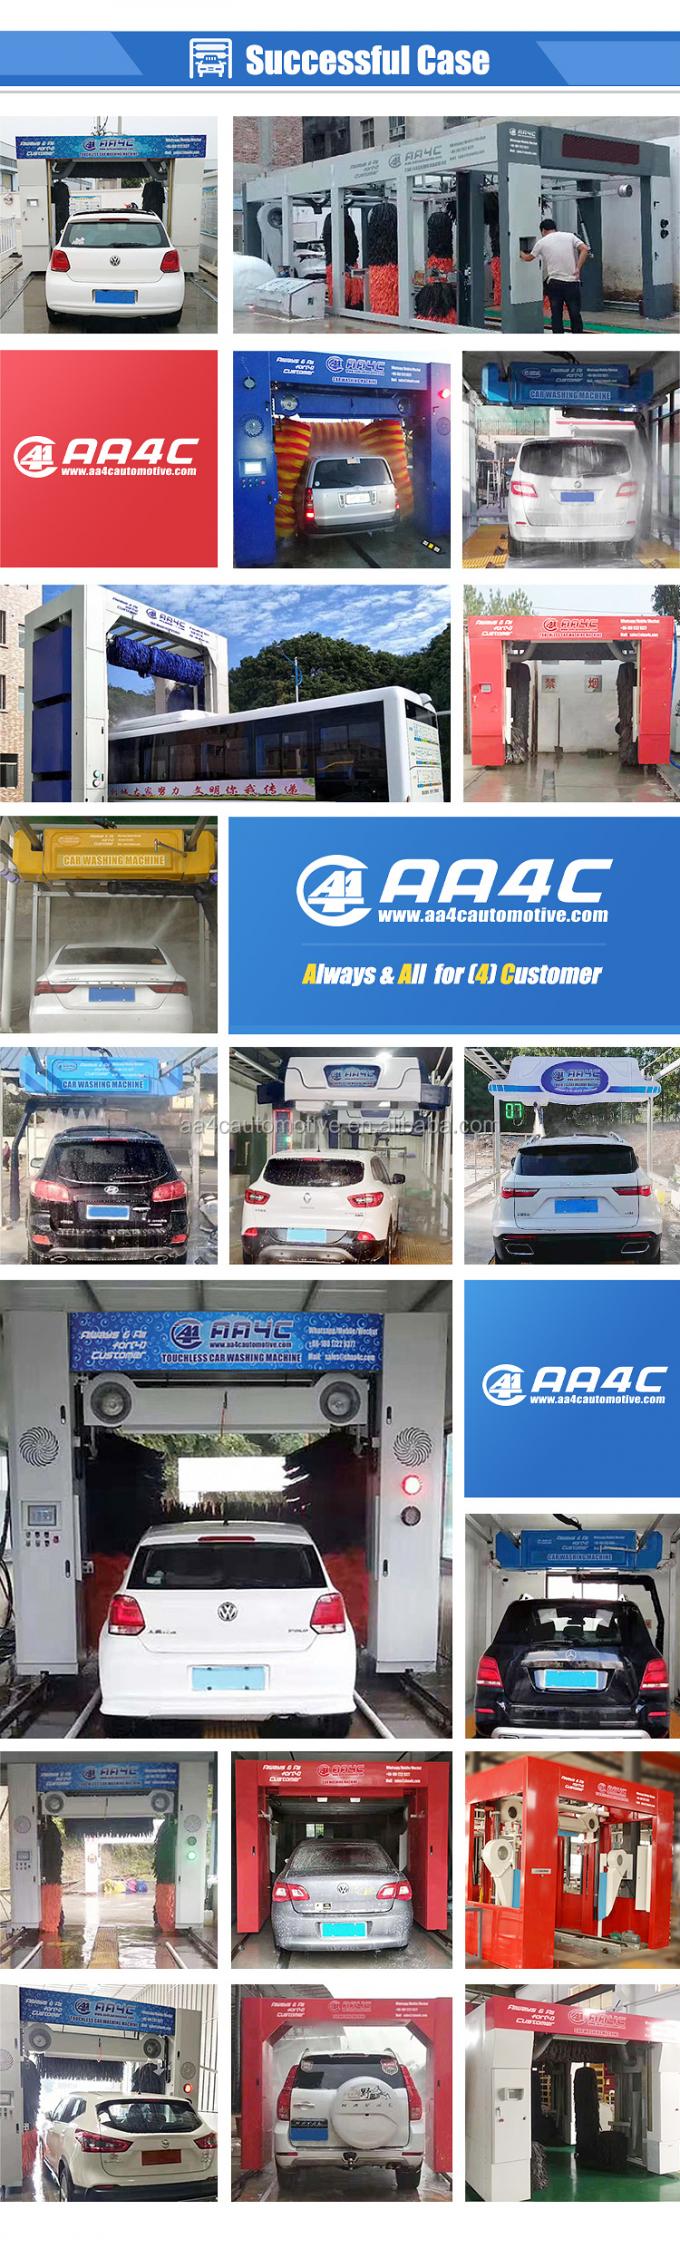 AA4C πλυντήριο 9 αυτοκινήτων σηράγγων αυτόματο πλυντήριο αυτοκινήτων βουρτσών πλυντηρίων αυτοκινήτων βουρτσών